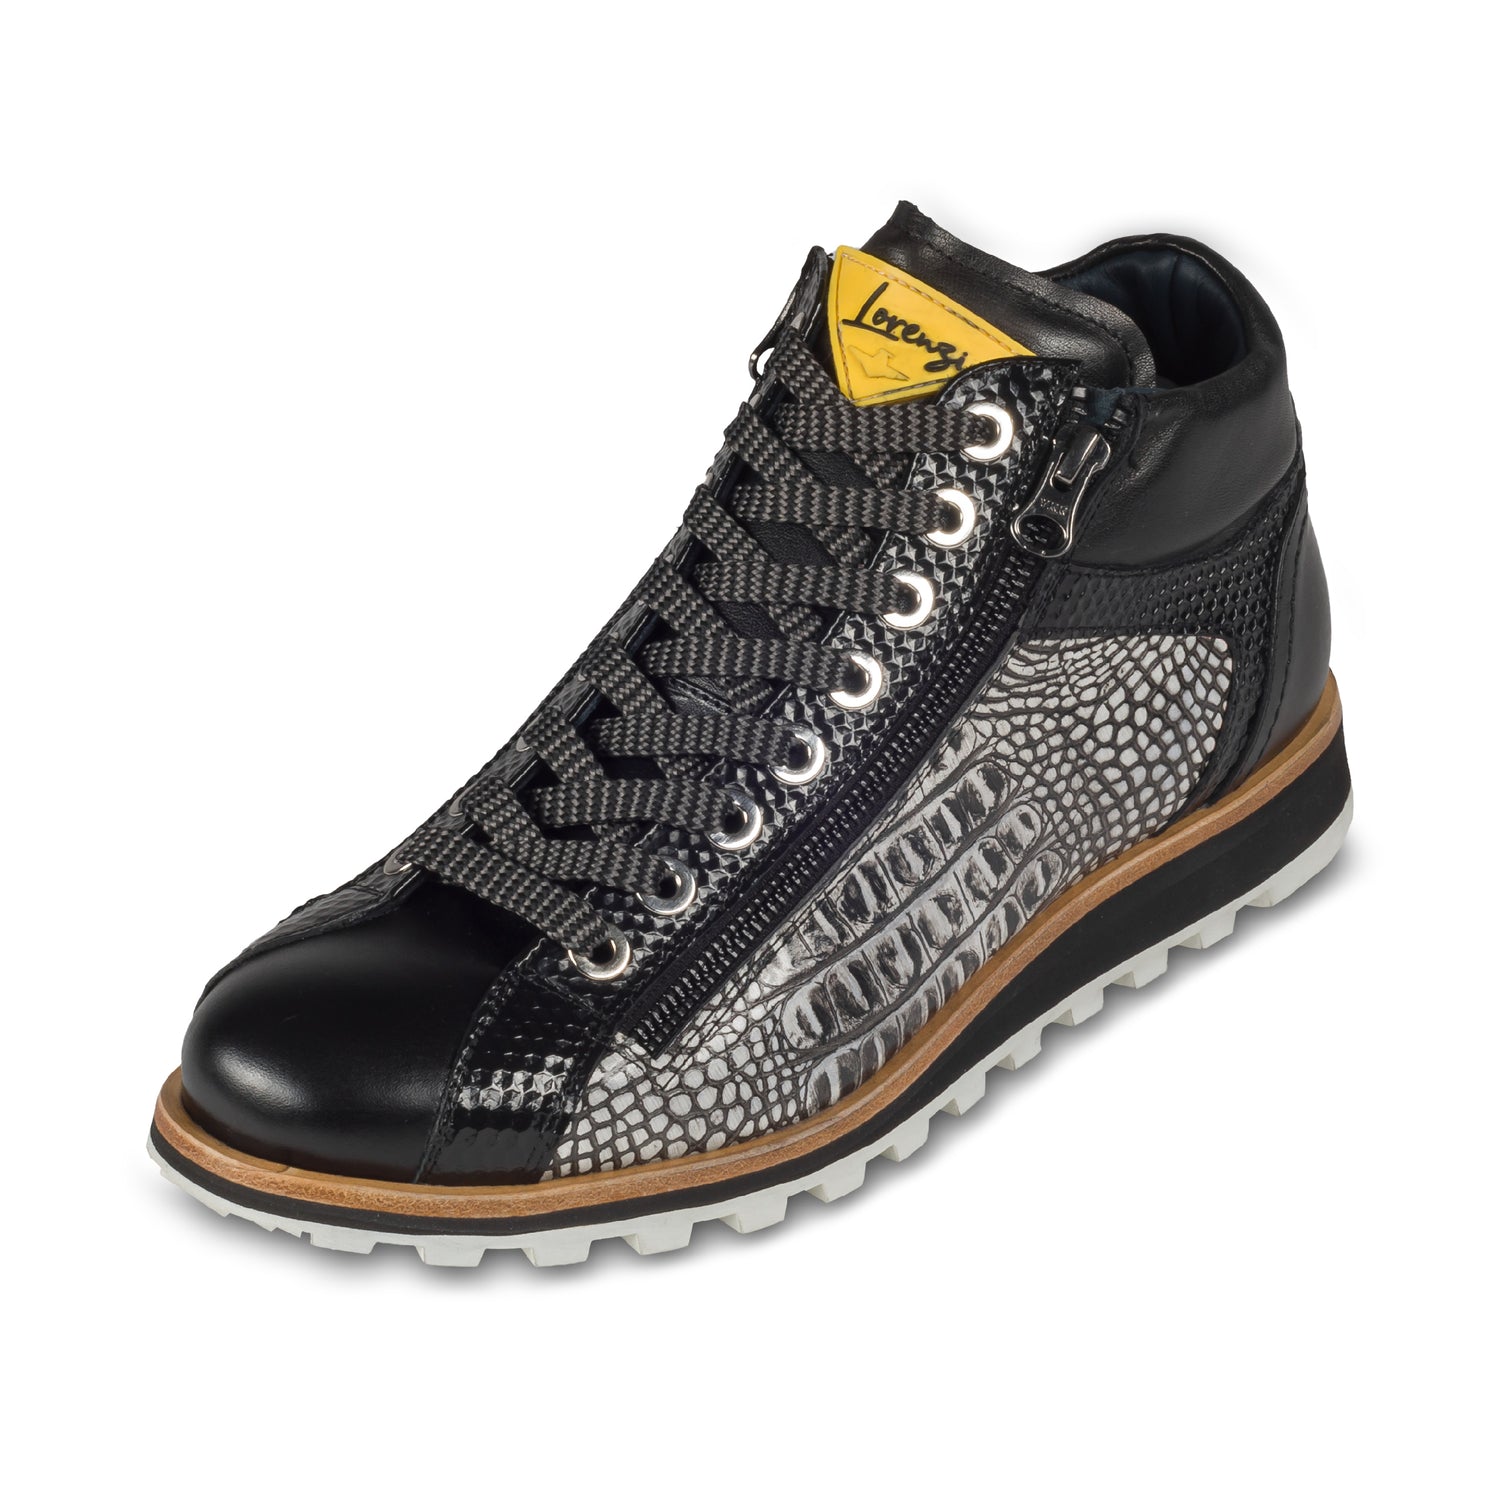 LORENZI - Italienische Herren Kalbsleder Sneaker Stiefel, in schwarz / weiß mit Reptil Prägung und seitlichem Reißverschluß. Handgefertigt und durchgenäht. Schräge Ansicht linker Schuh.